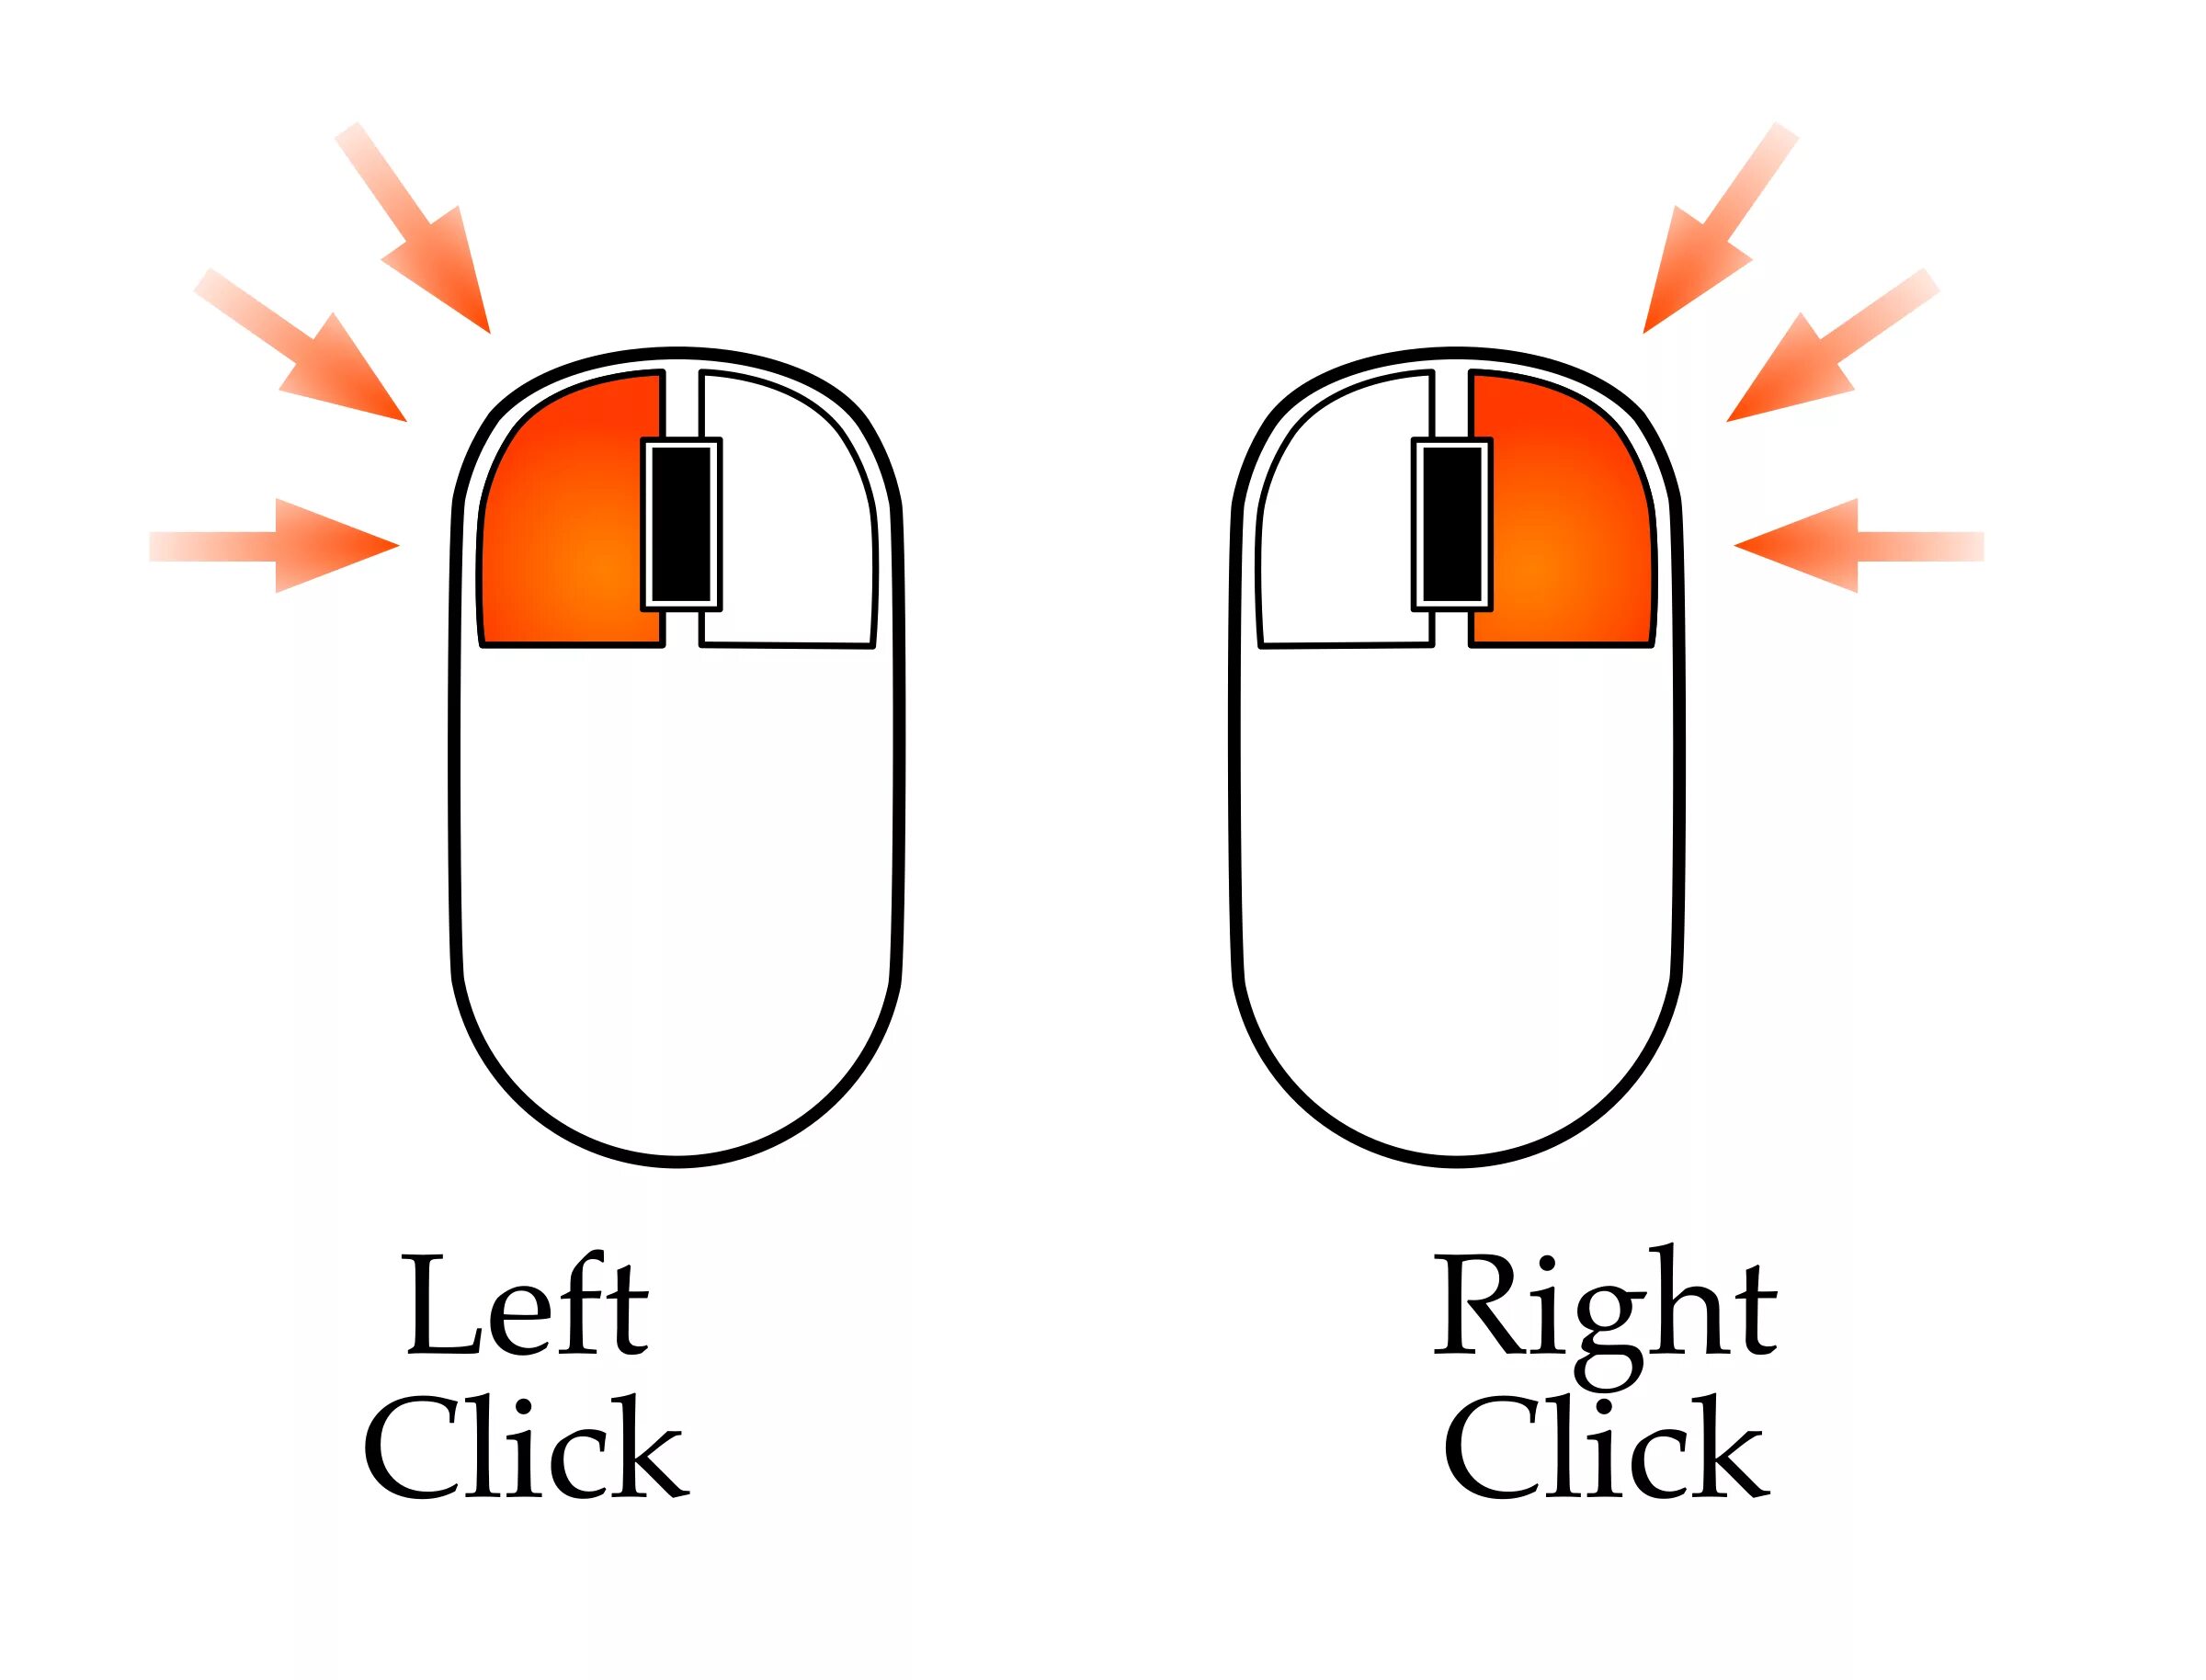 Нажать правую кнопку мыши. Правая кнопка мыши. Левая кнопка мыши. Левой кнопкой мыши. Нажатие левой кнопки мыши.